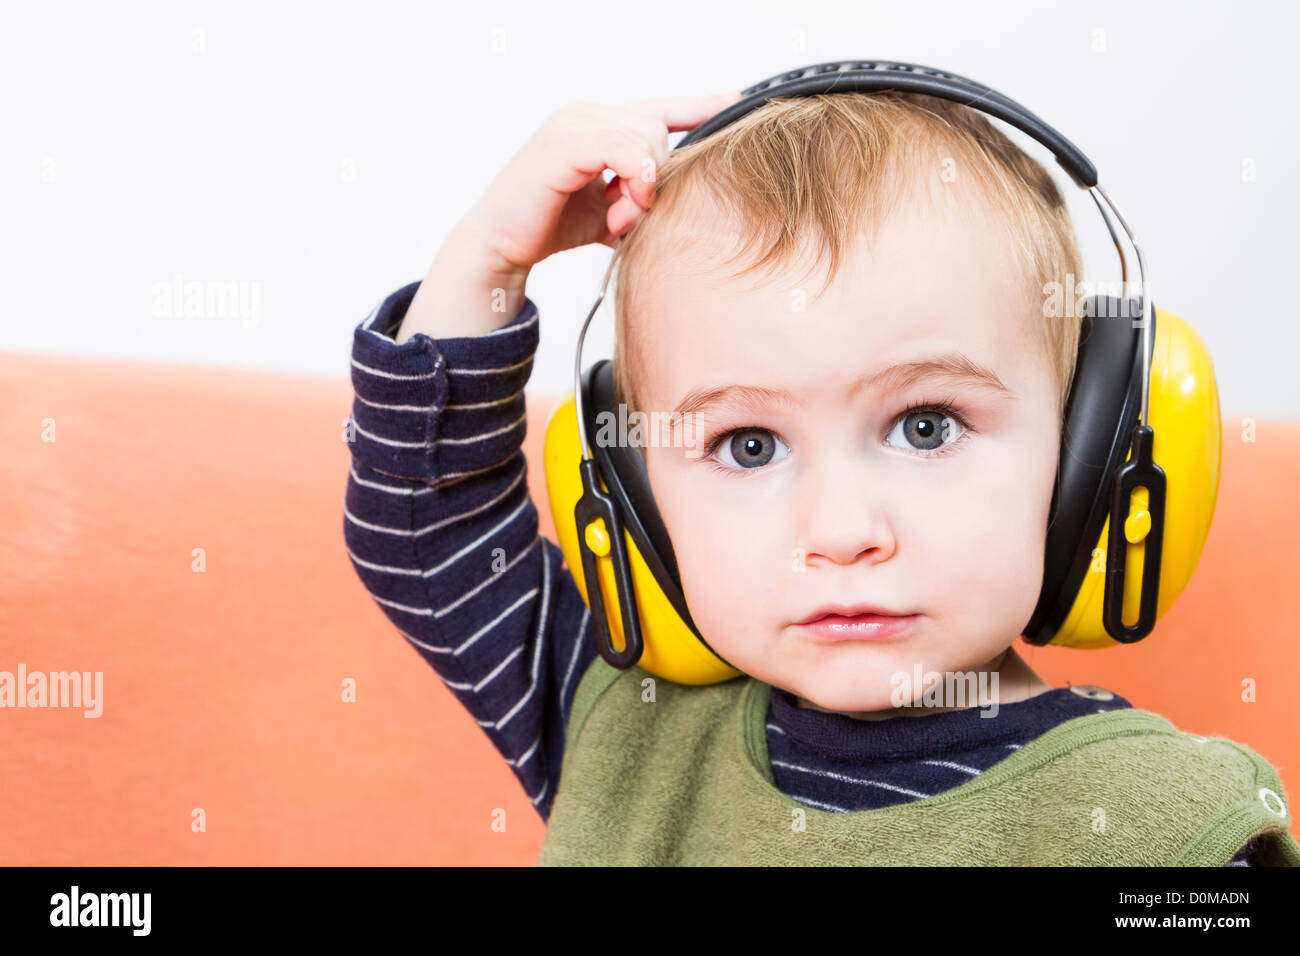 Jeune enfant sur table avec des cache-oreilles jaune Photo Stock - Alamy